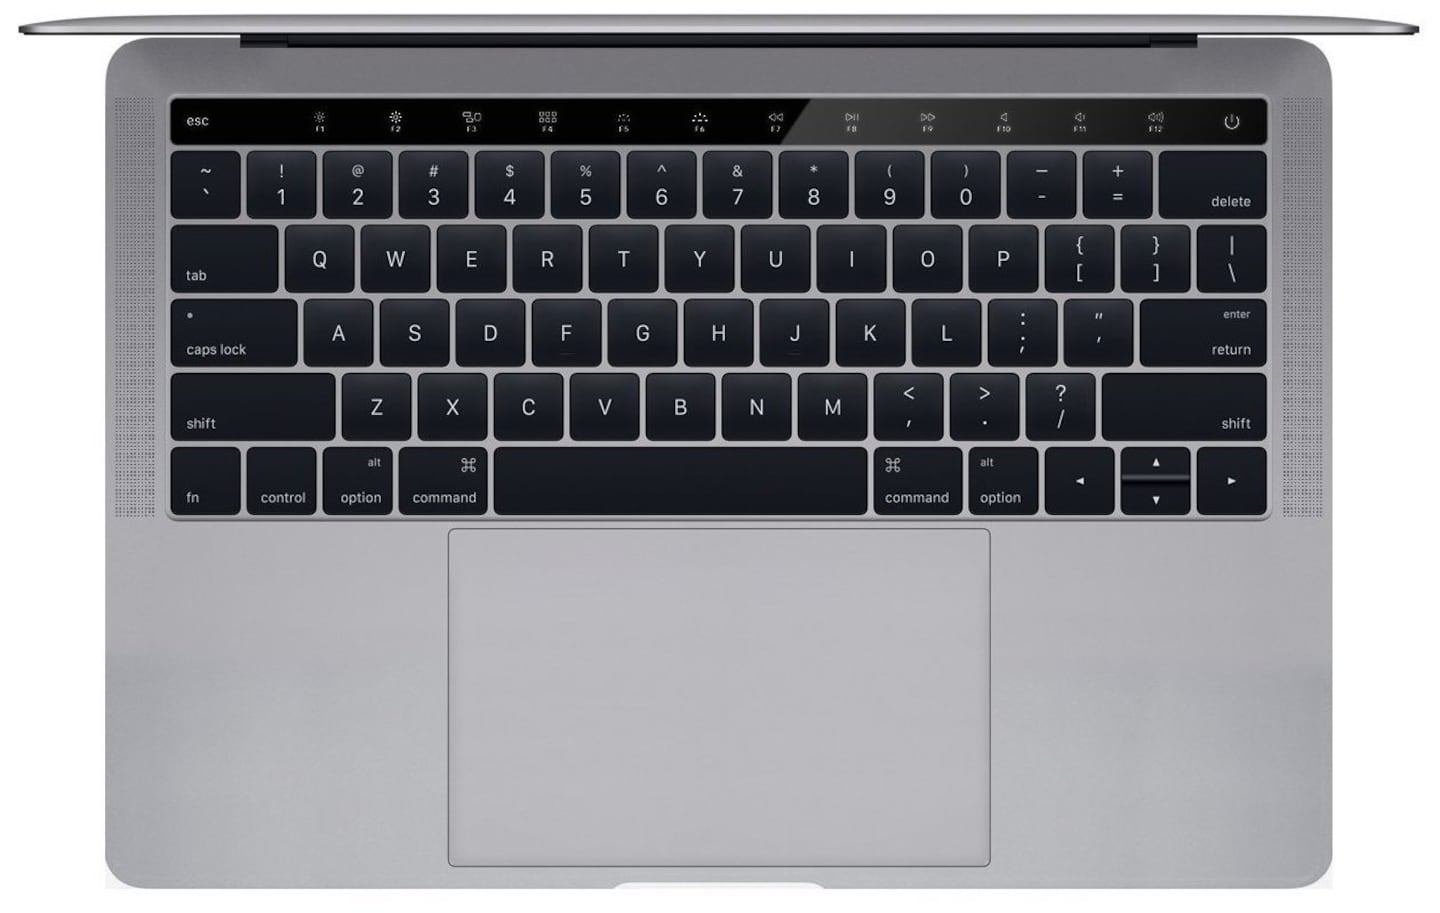  Apple reconoció los problemas en el teclado MacBook y ofreció soluciones 